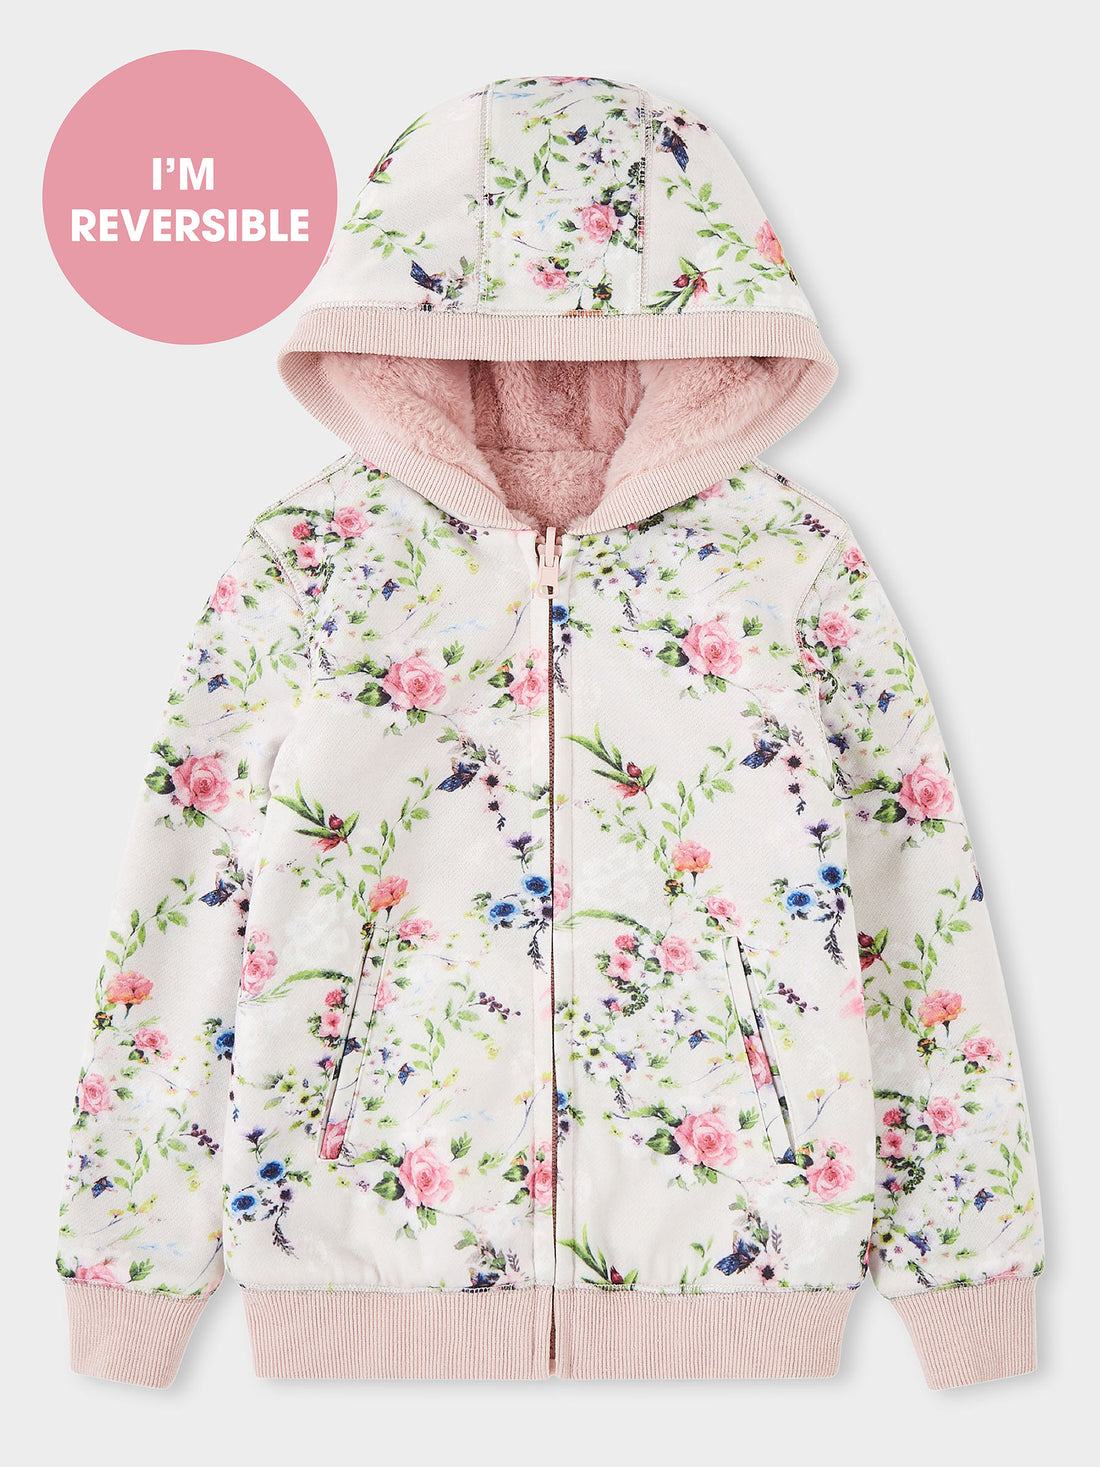 Ava Fay Reversible Jacket